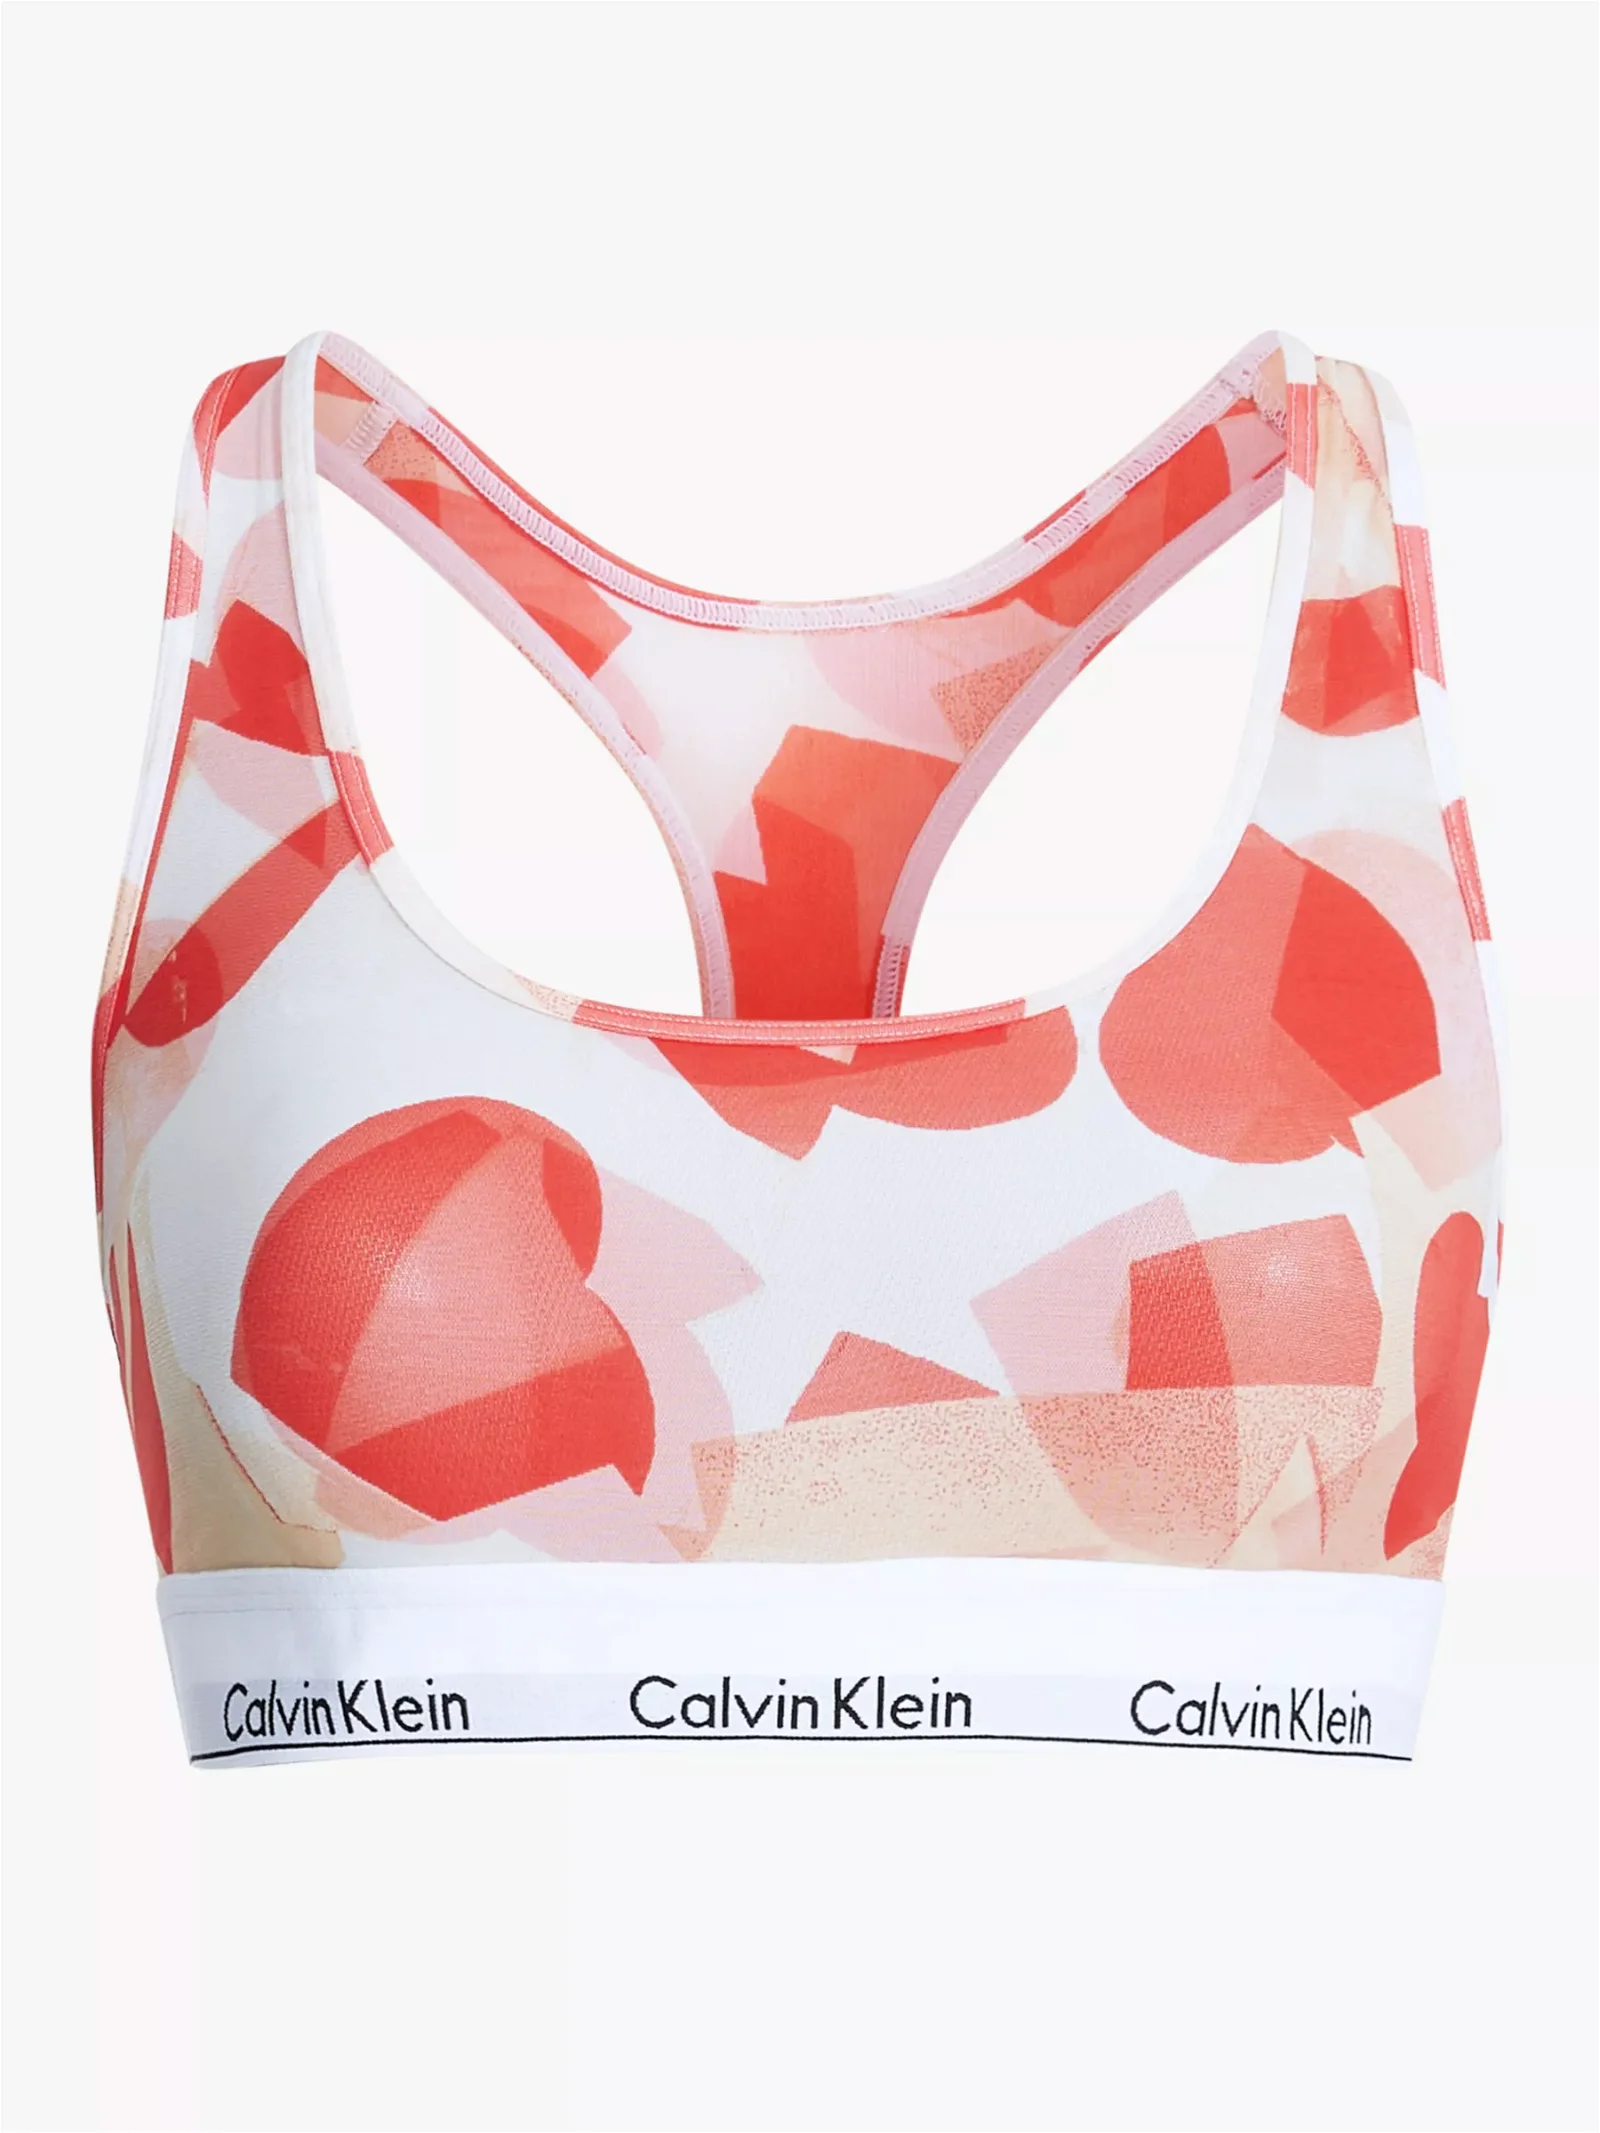 CALVIN KLEIN Modern Cotton Valentines Heart Print Bralette in White/Orange  Odyssey